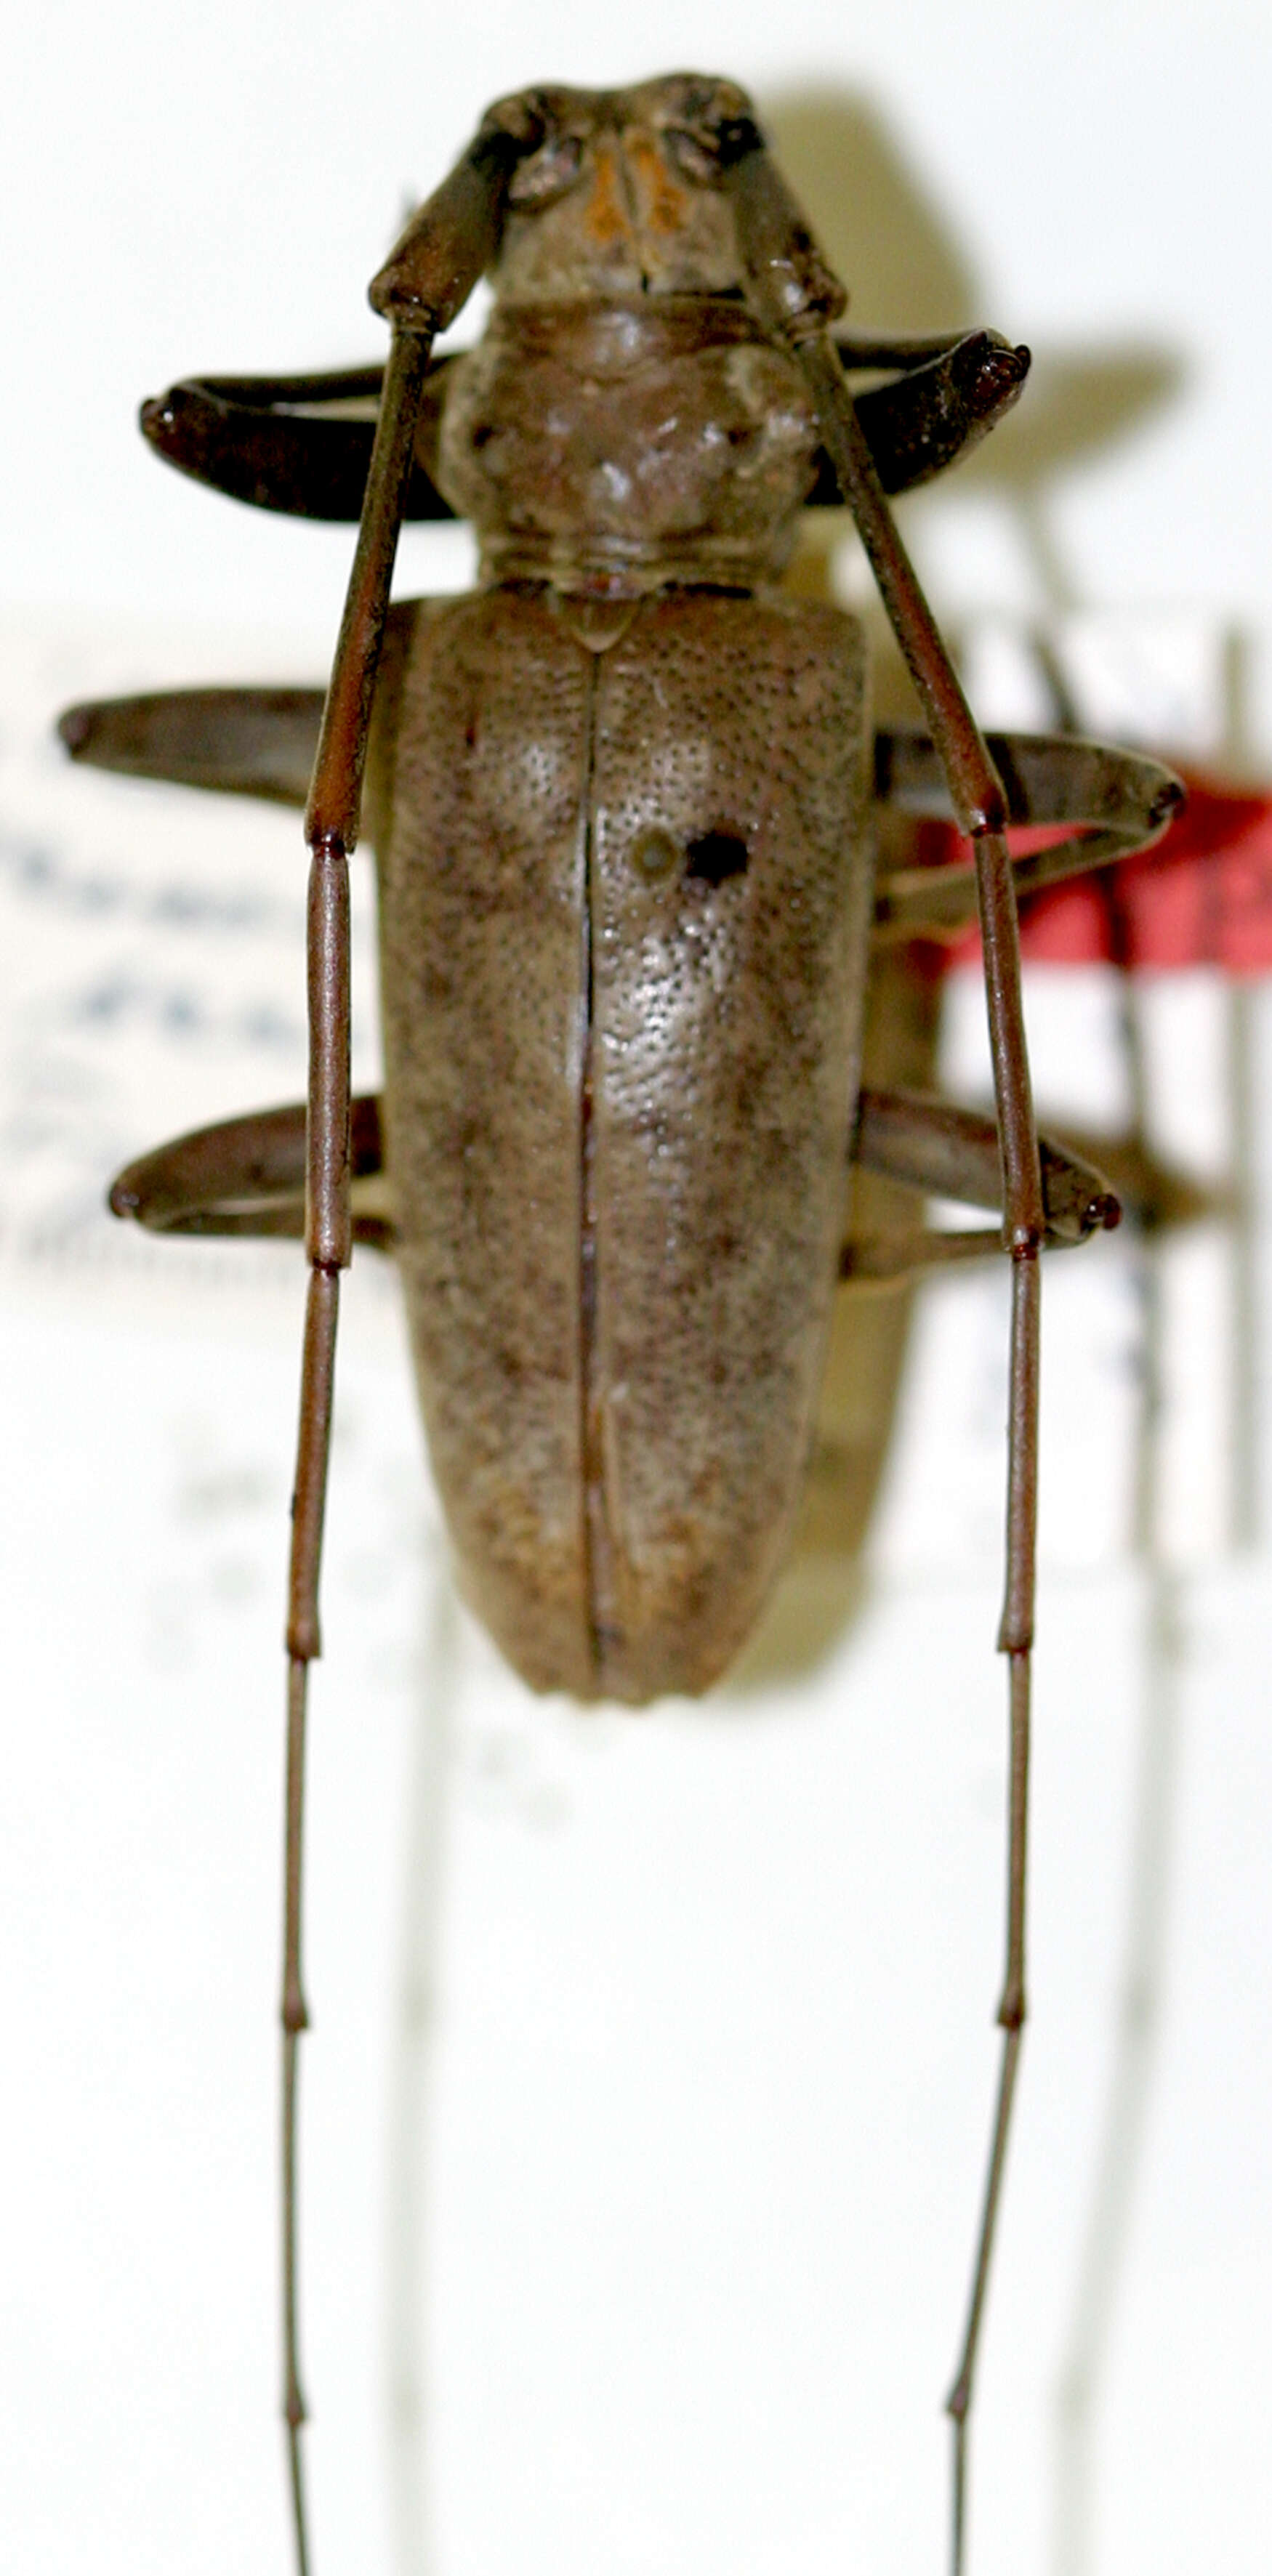 Image of Acalolepta sericeiceps (Kriesche 1936)